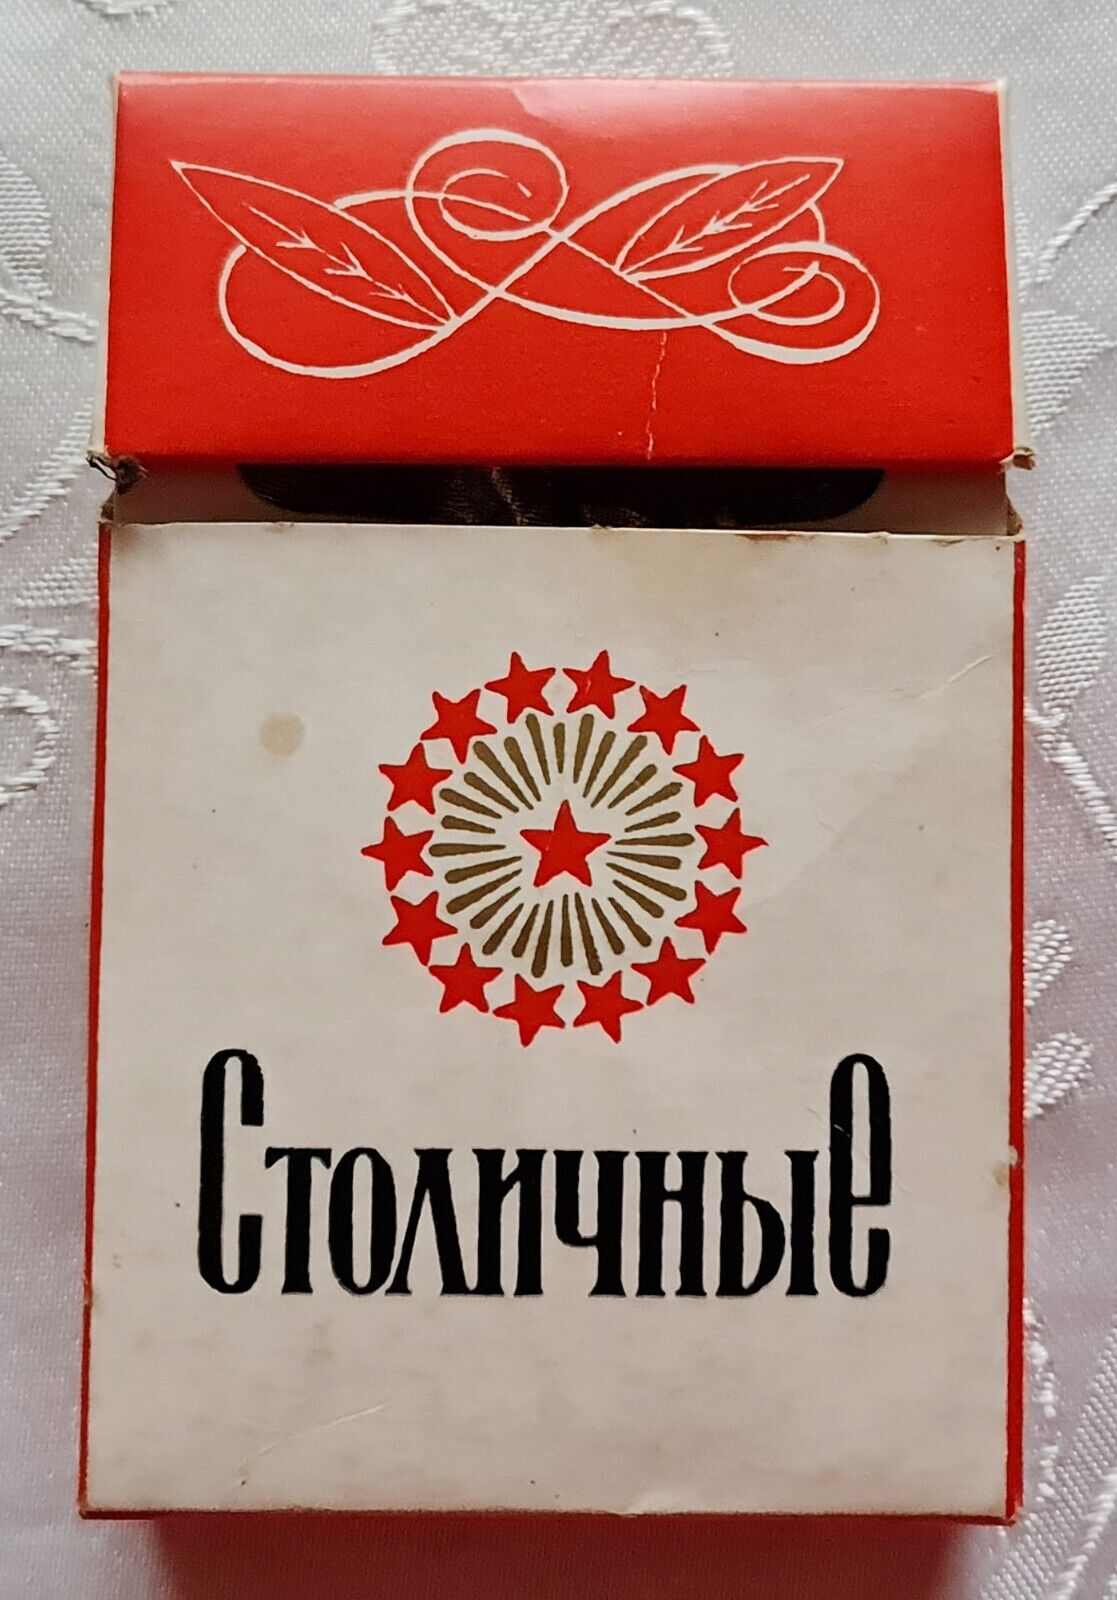 Vintage Russia Communist Soviet Union USSR Stolichnye Cigarette Packet Tobacco